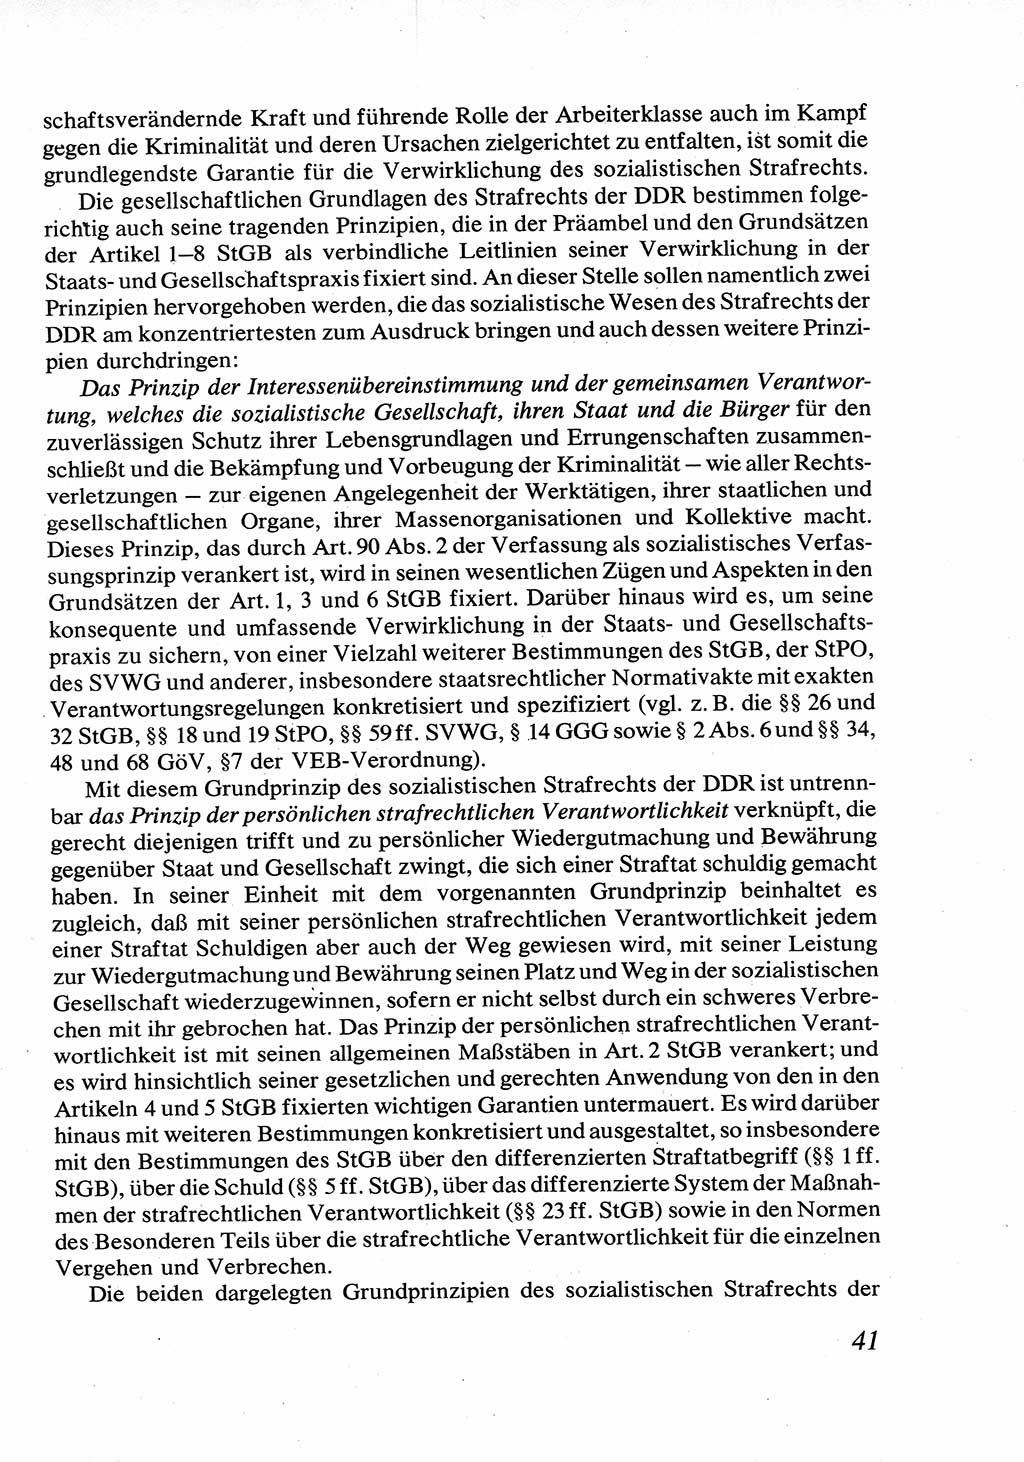 Strafrecht [Deutsche Demokratische Republik (DDR)], Allgemeiner Teil, Lehrbuch 1976, Seite 41 (Strafr. DDR AT Lb. 1976, S. 41)